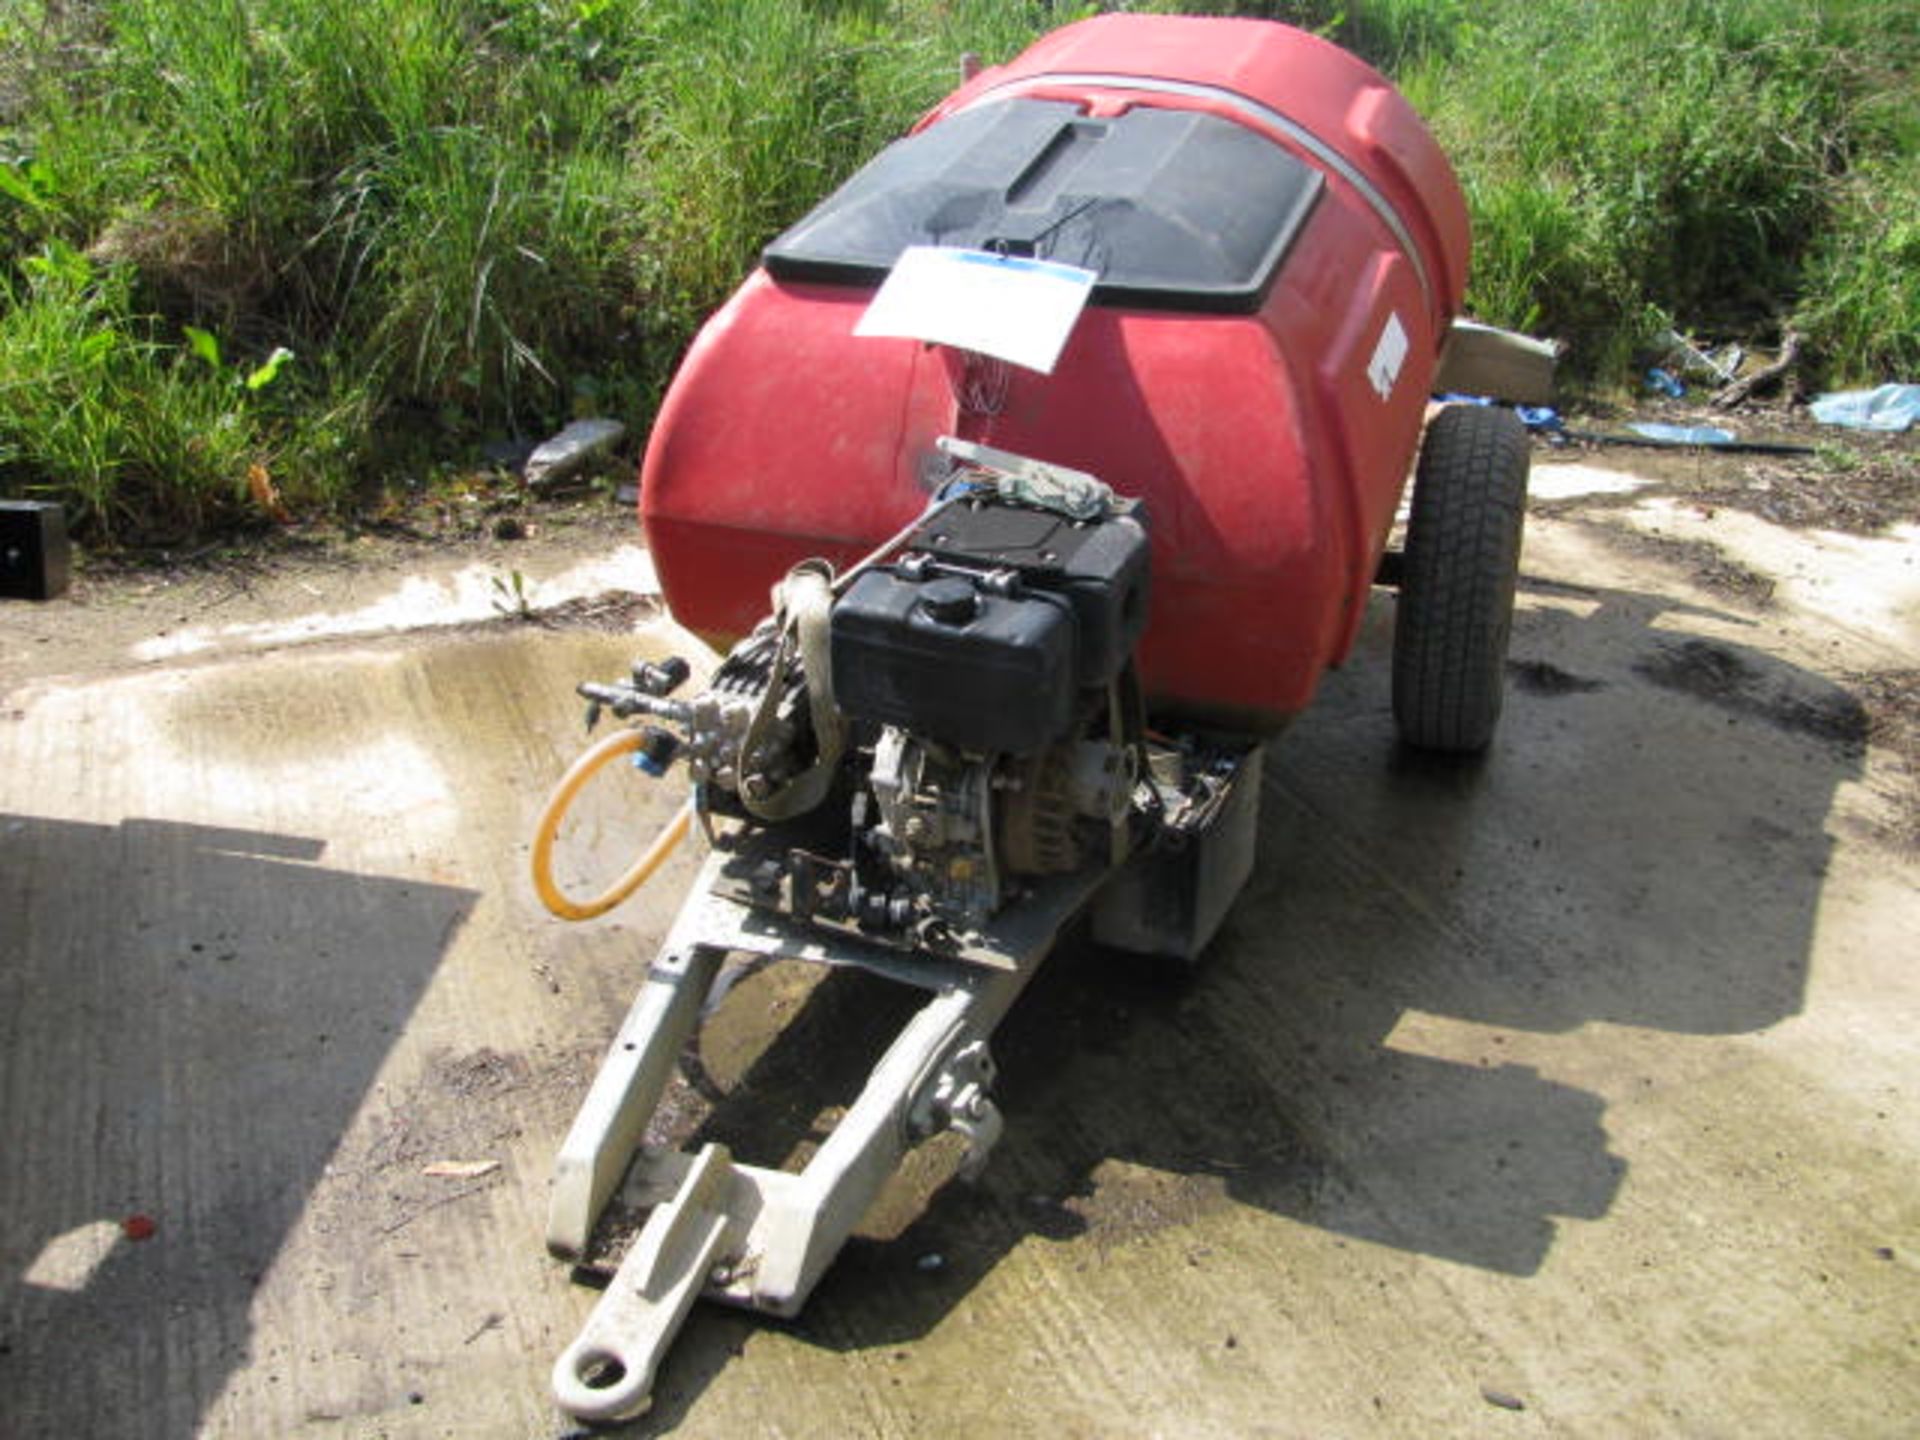 Taskman diesel powered towable pressure washer